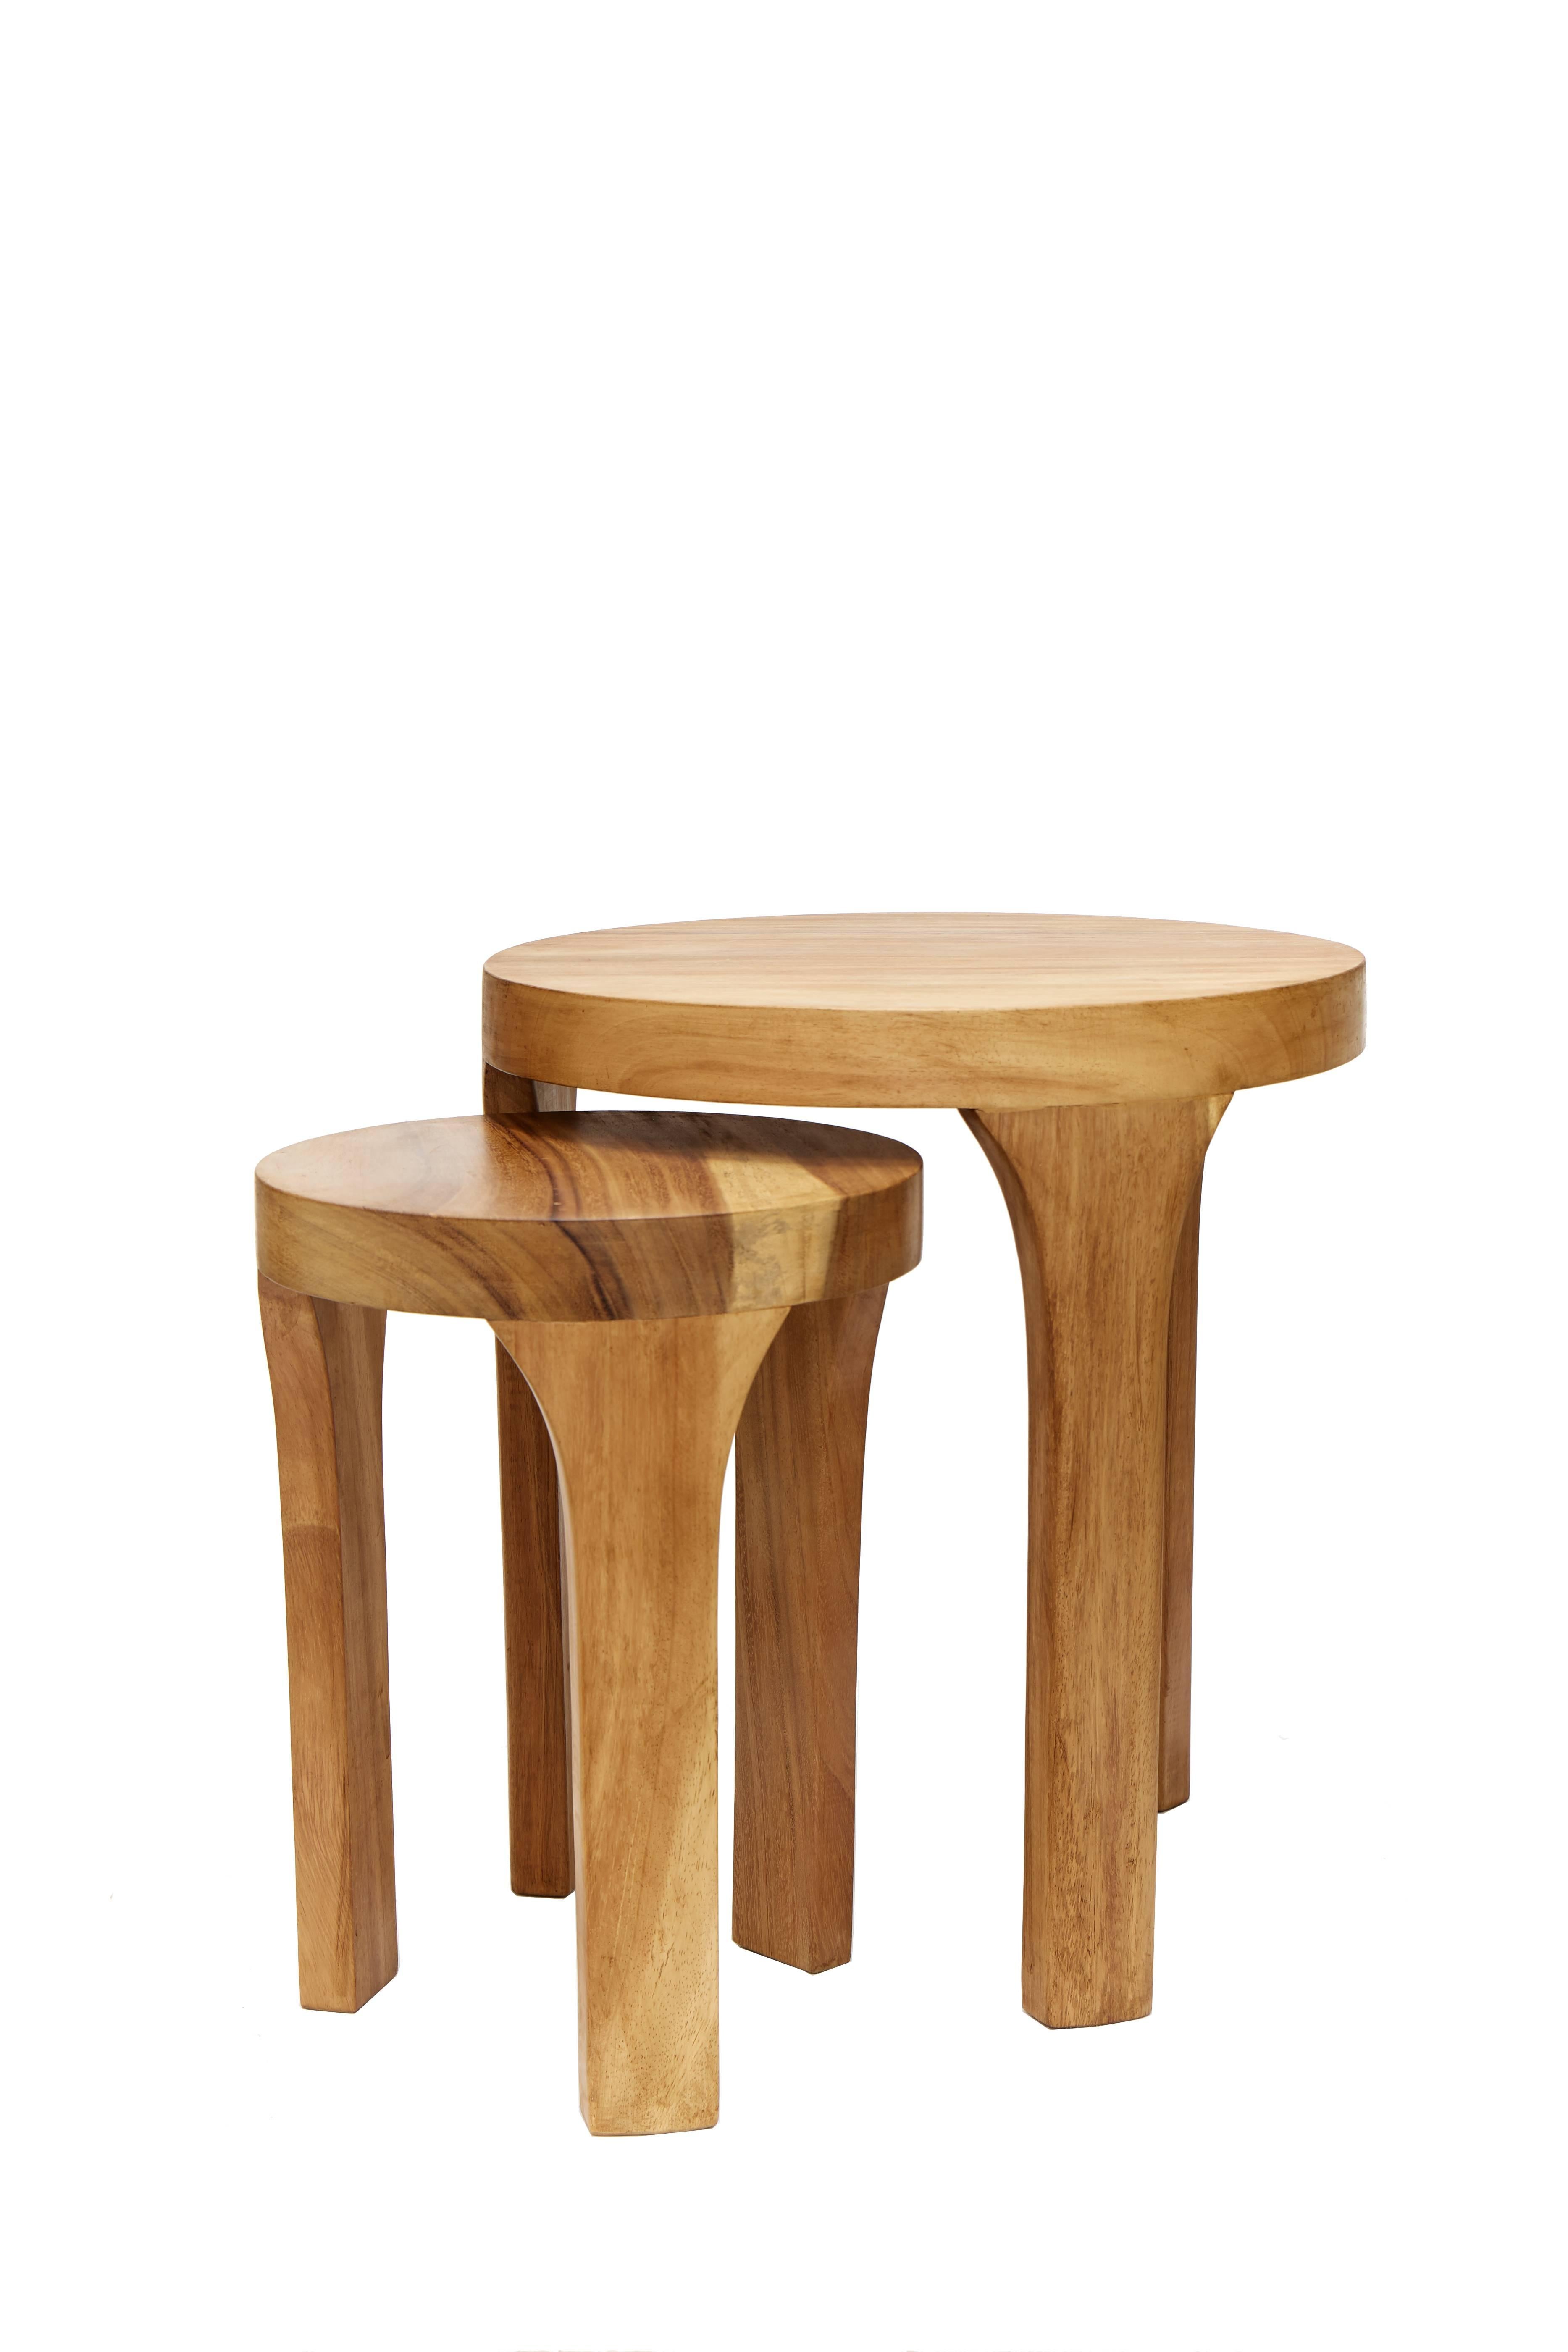 Dieses Set aus zwei handgefertigten Marcelo-Mitteltischen ist eine einzigartige Kreation von Leon Design aus Mexiko-Stadt. Beide sind aus massivem tropischem Parota-Holz gefertigt und handgeschnitzt.

Abmessungen:
Großer Tisch: Durchmesser 50 cm